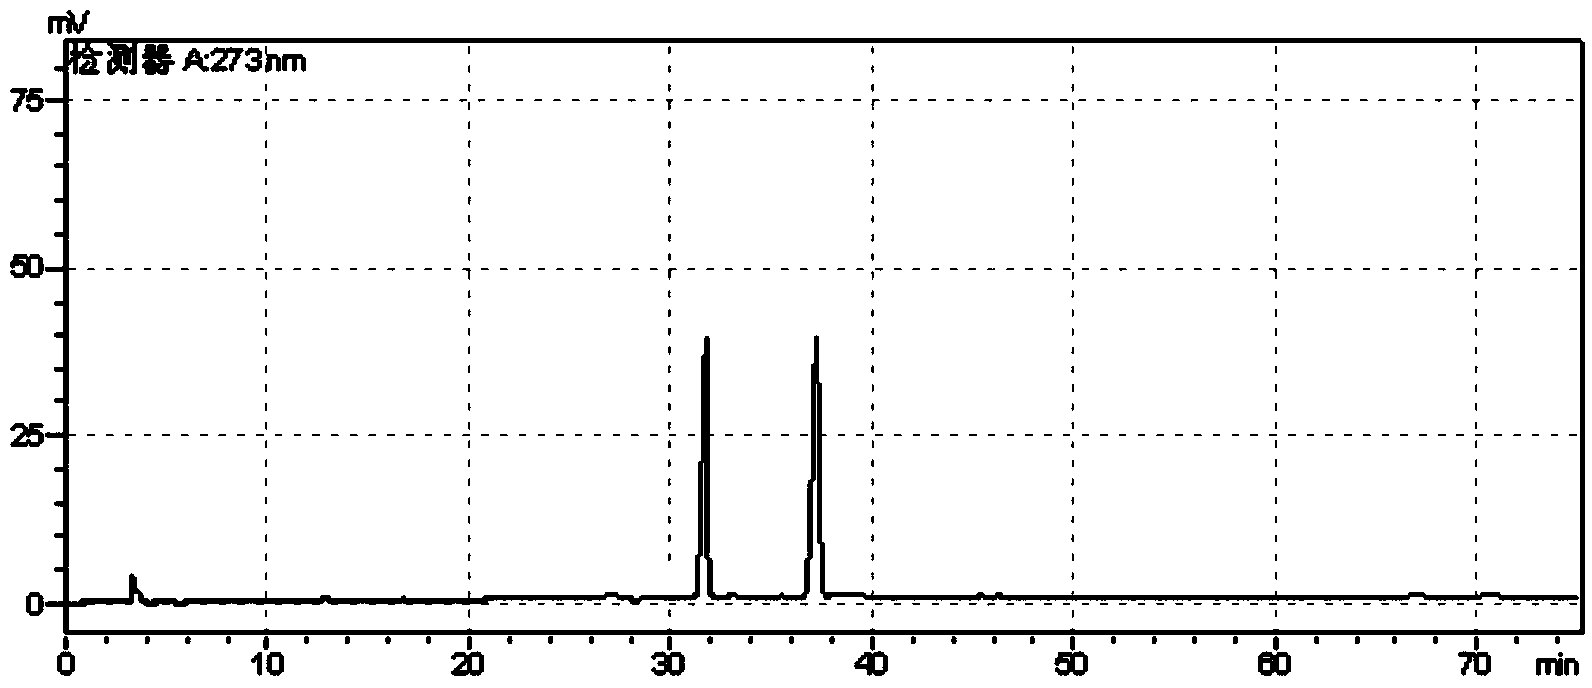 Establishment method of scorzonera fingerprint spectrum and scorzonera standard fingerprint spectrum